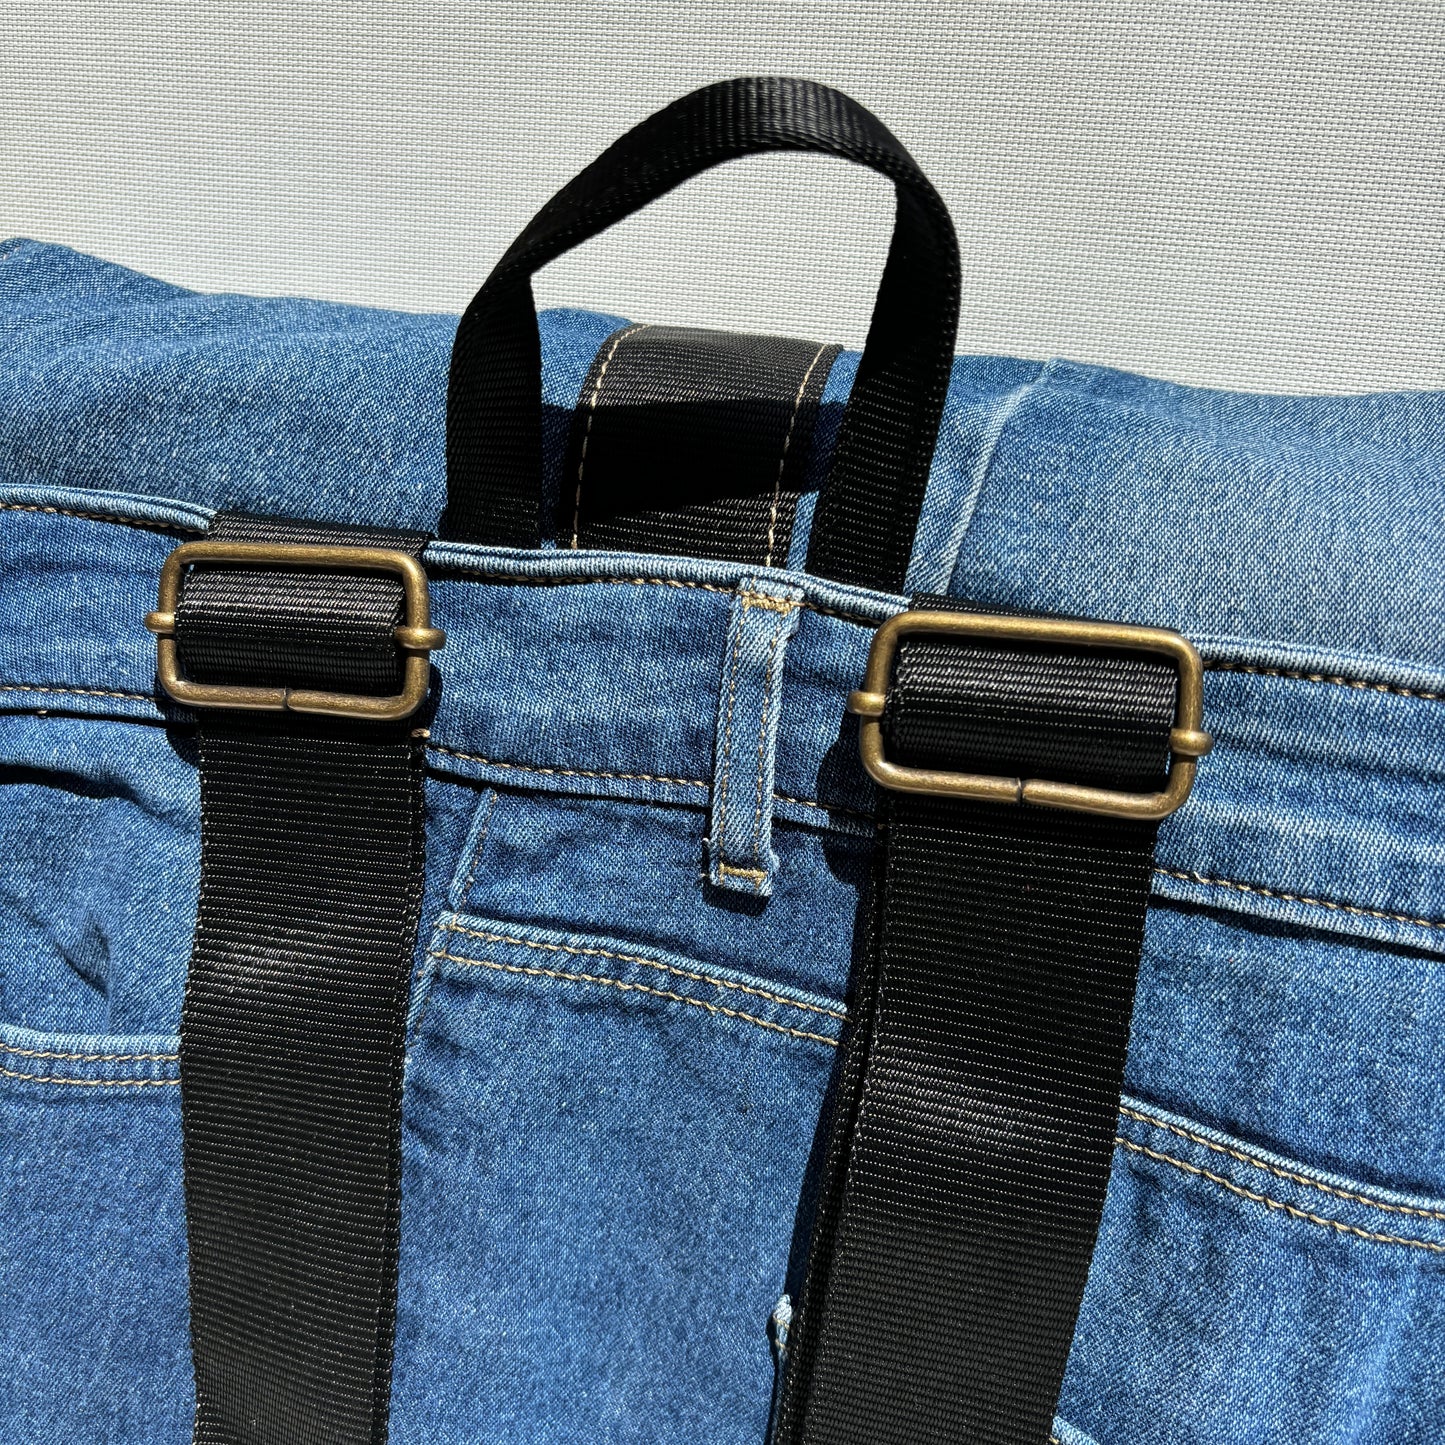 Mochila Top Caomka Recycled ♻️ Jeans · Pieza Única 15567